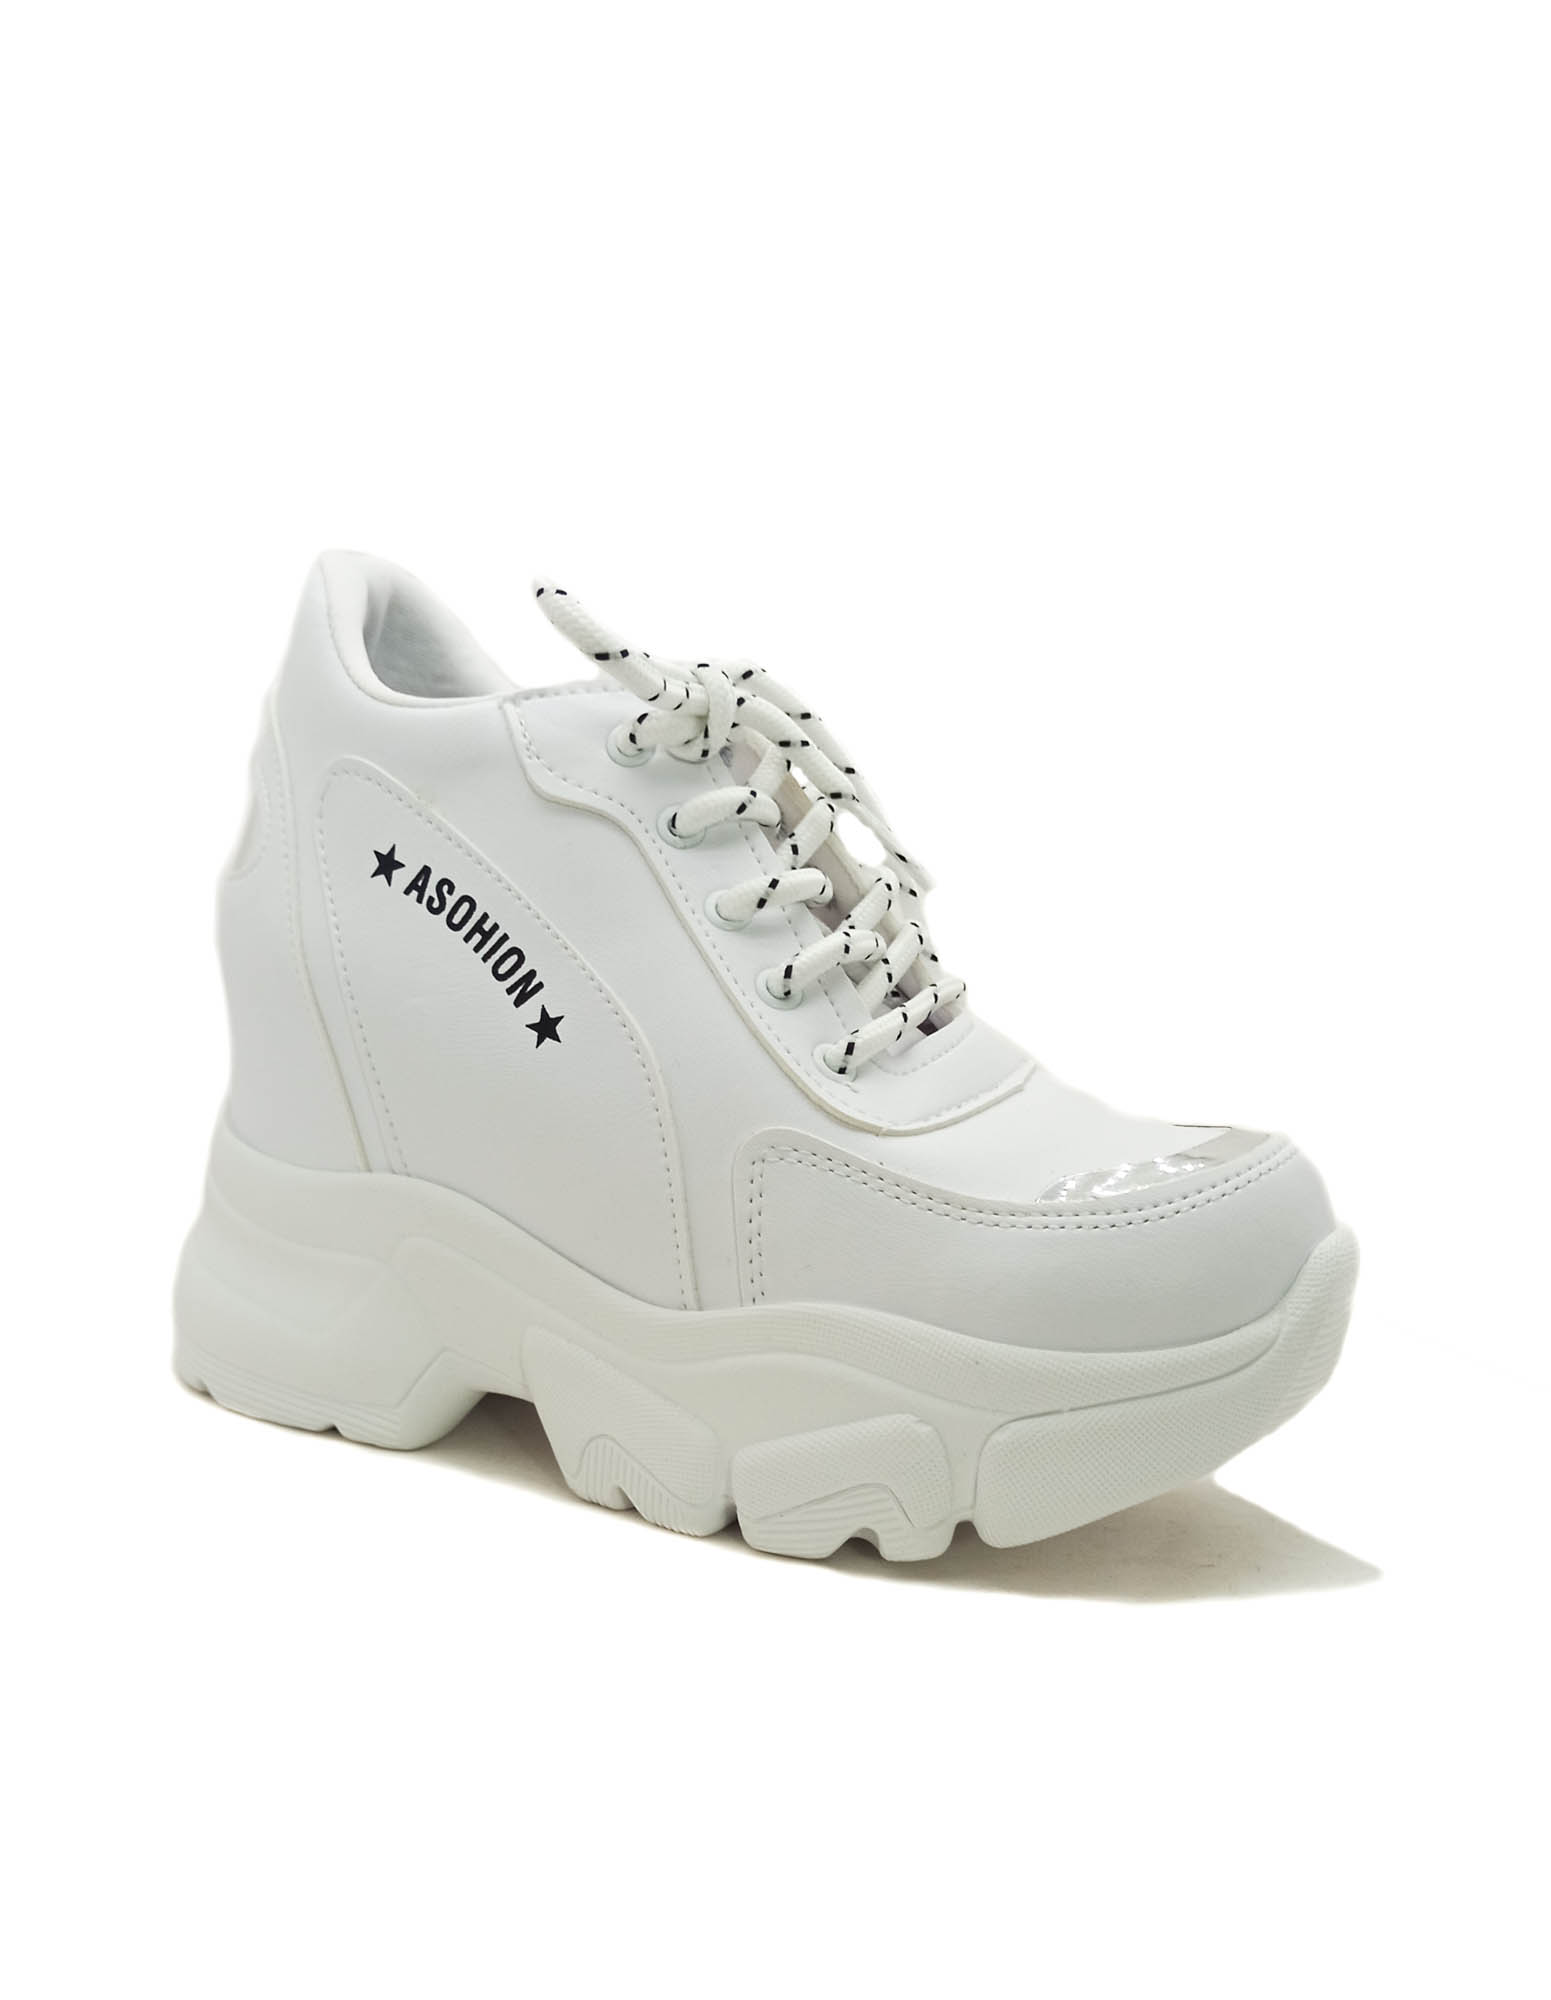  Beyaz Renk Cilt Gizli Dolgu Topuk Kadın Sneakers